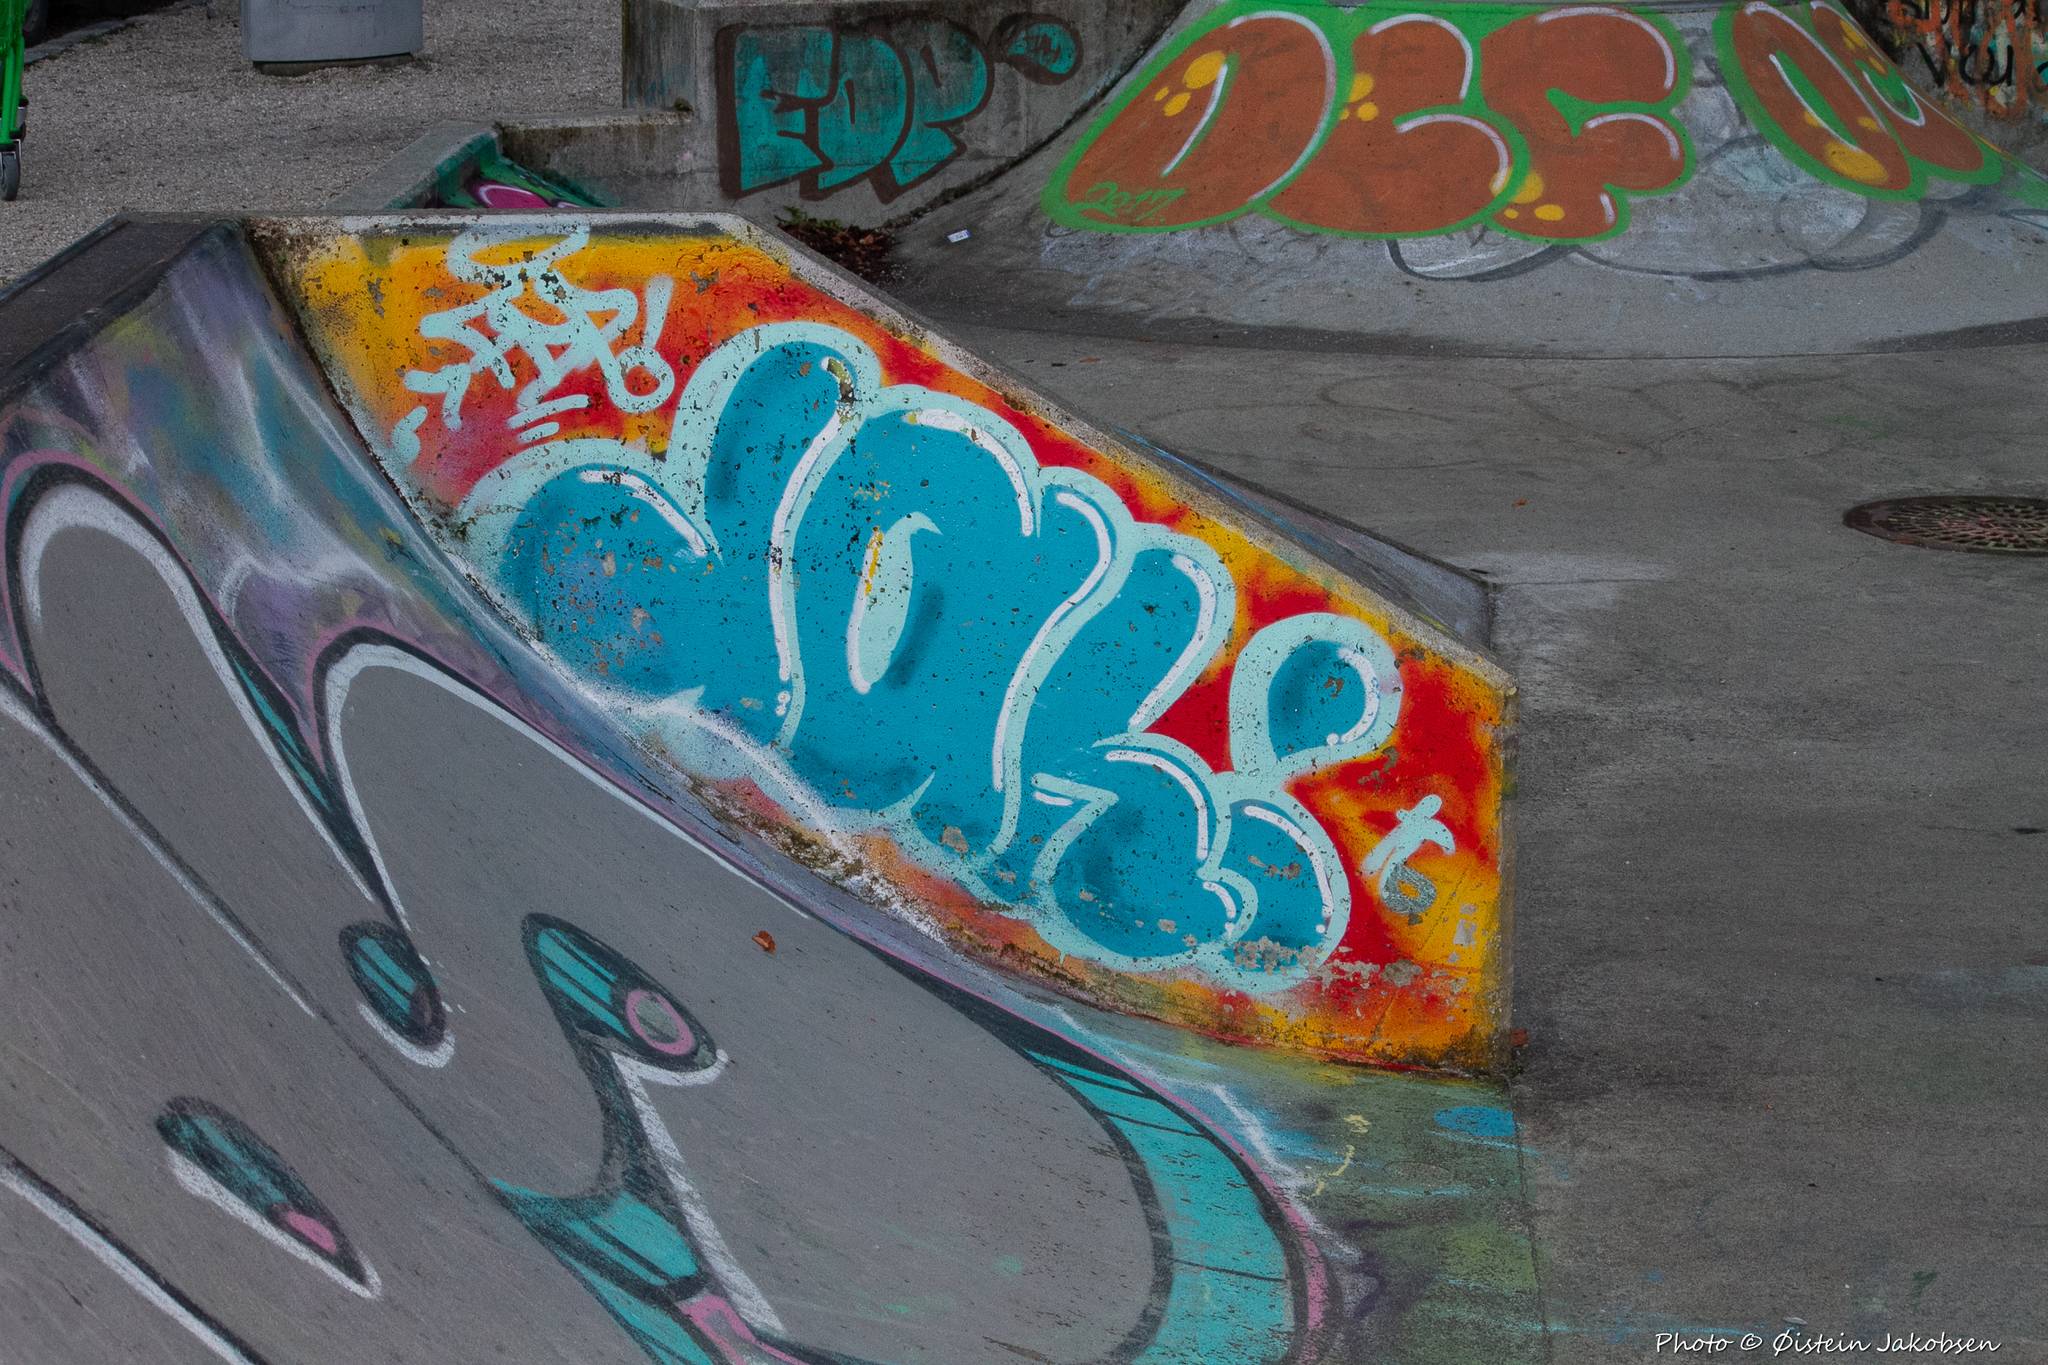 &mdash;Graffiti spot / Skating park